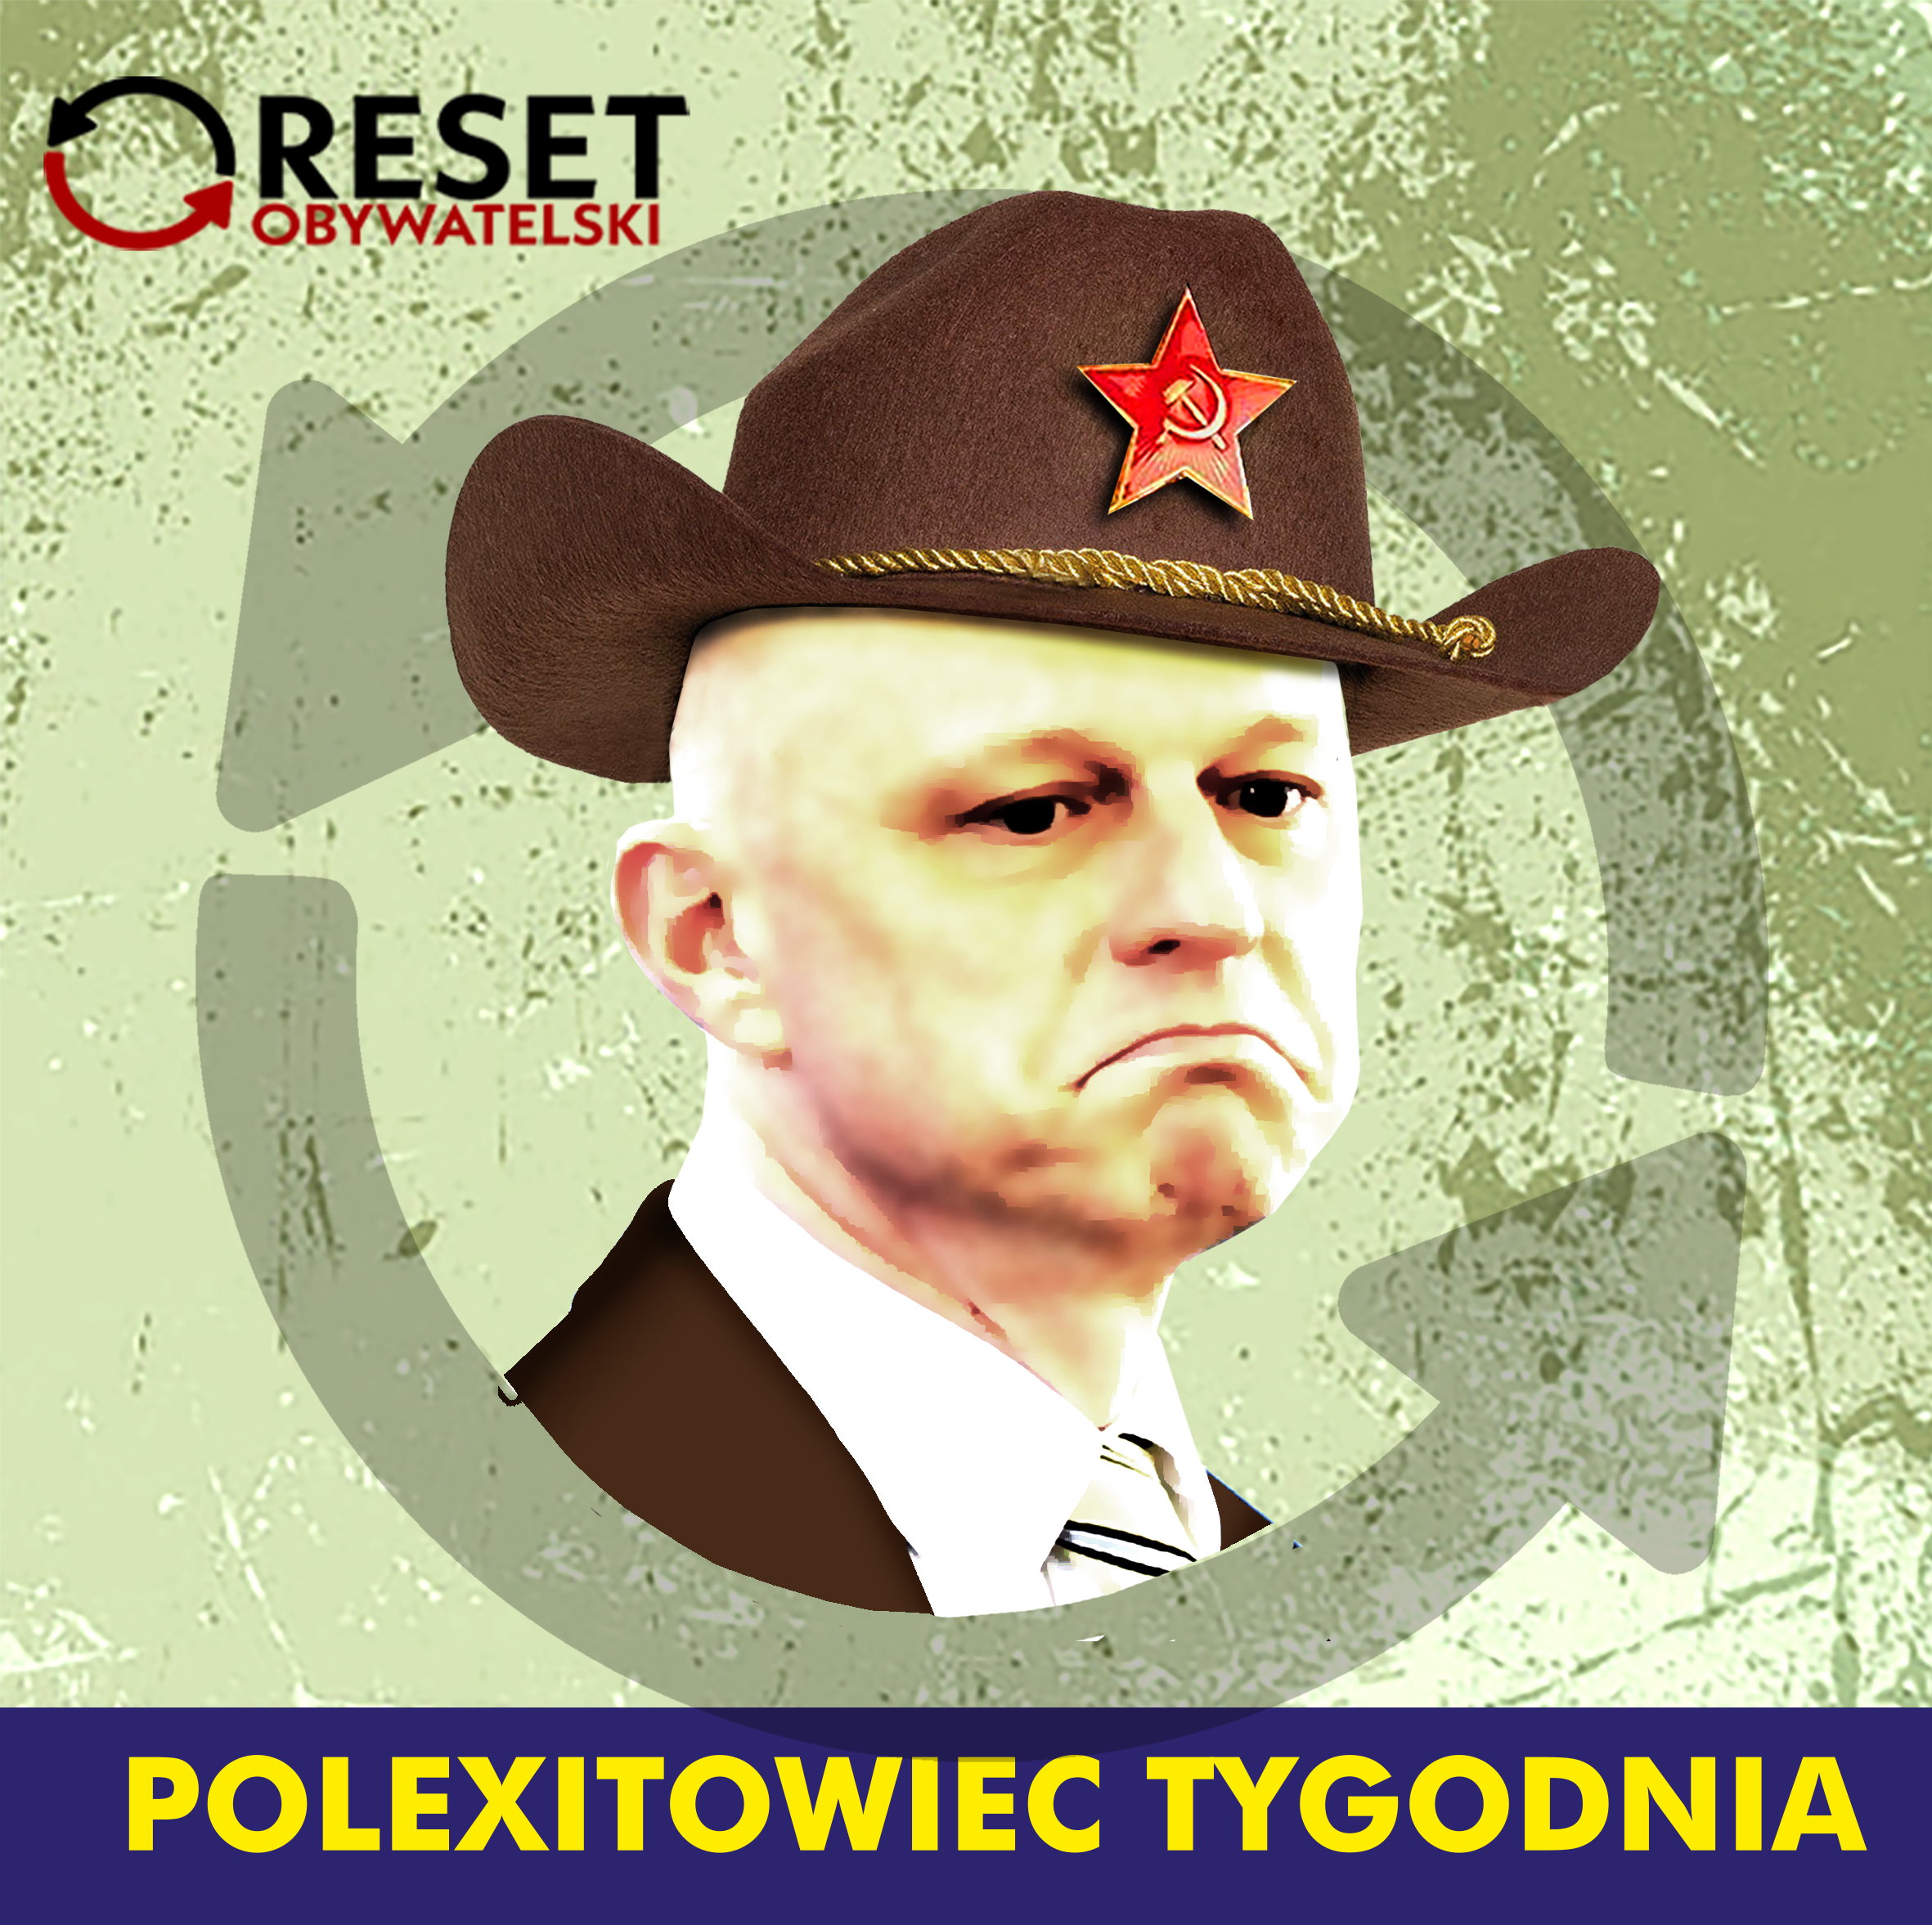 Polexitowiec tygodnia - Paweł Szałamacha